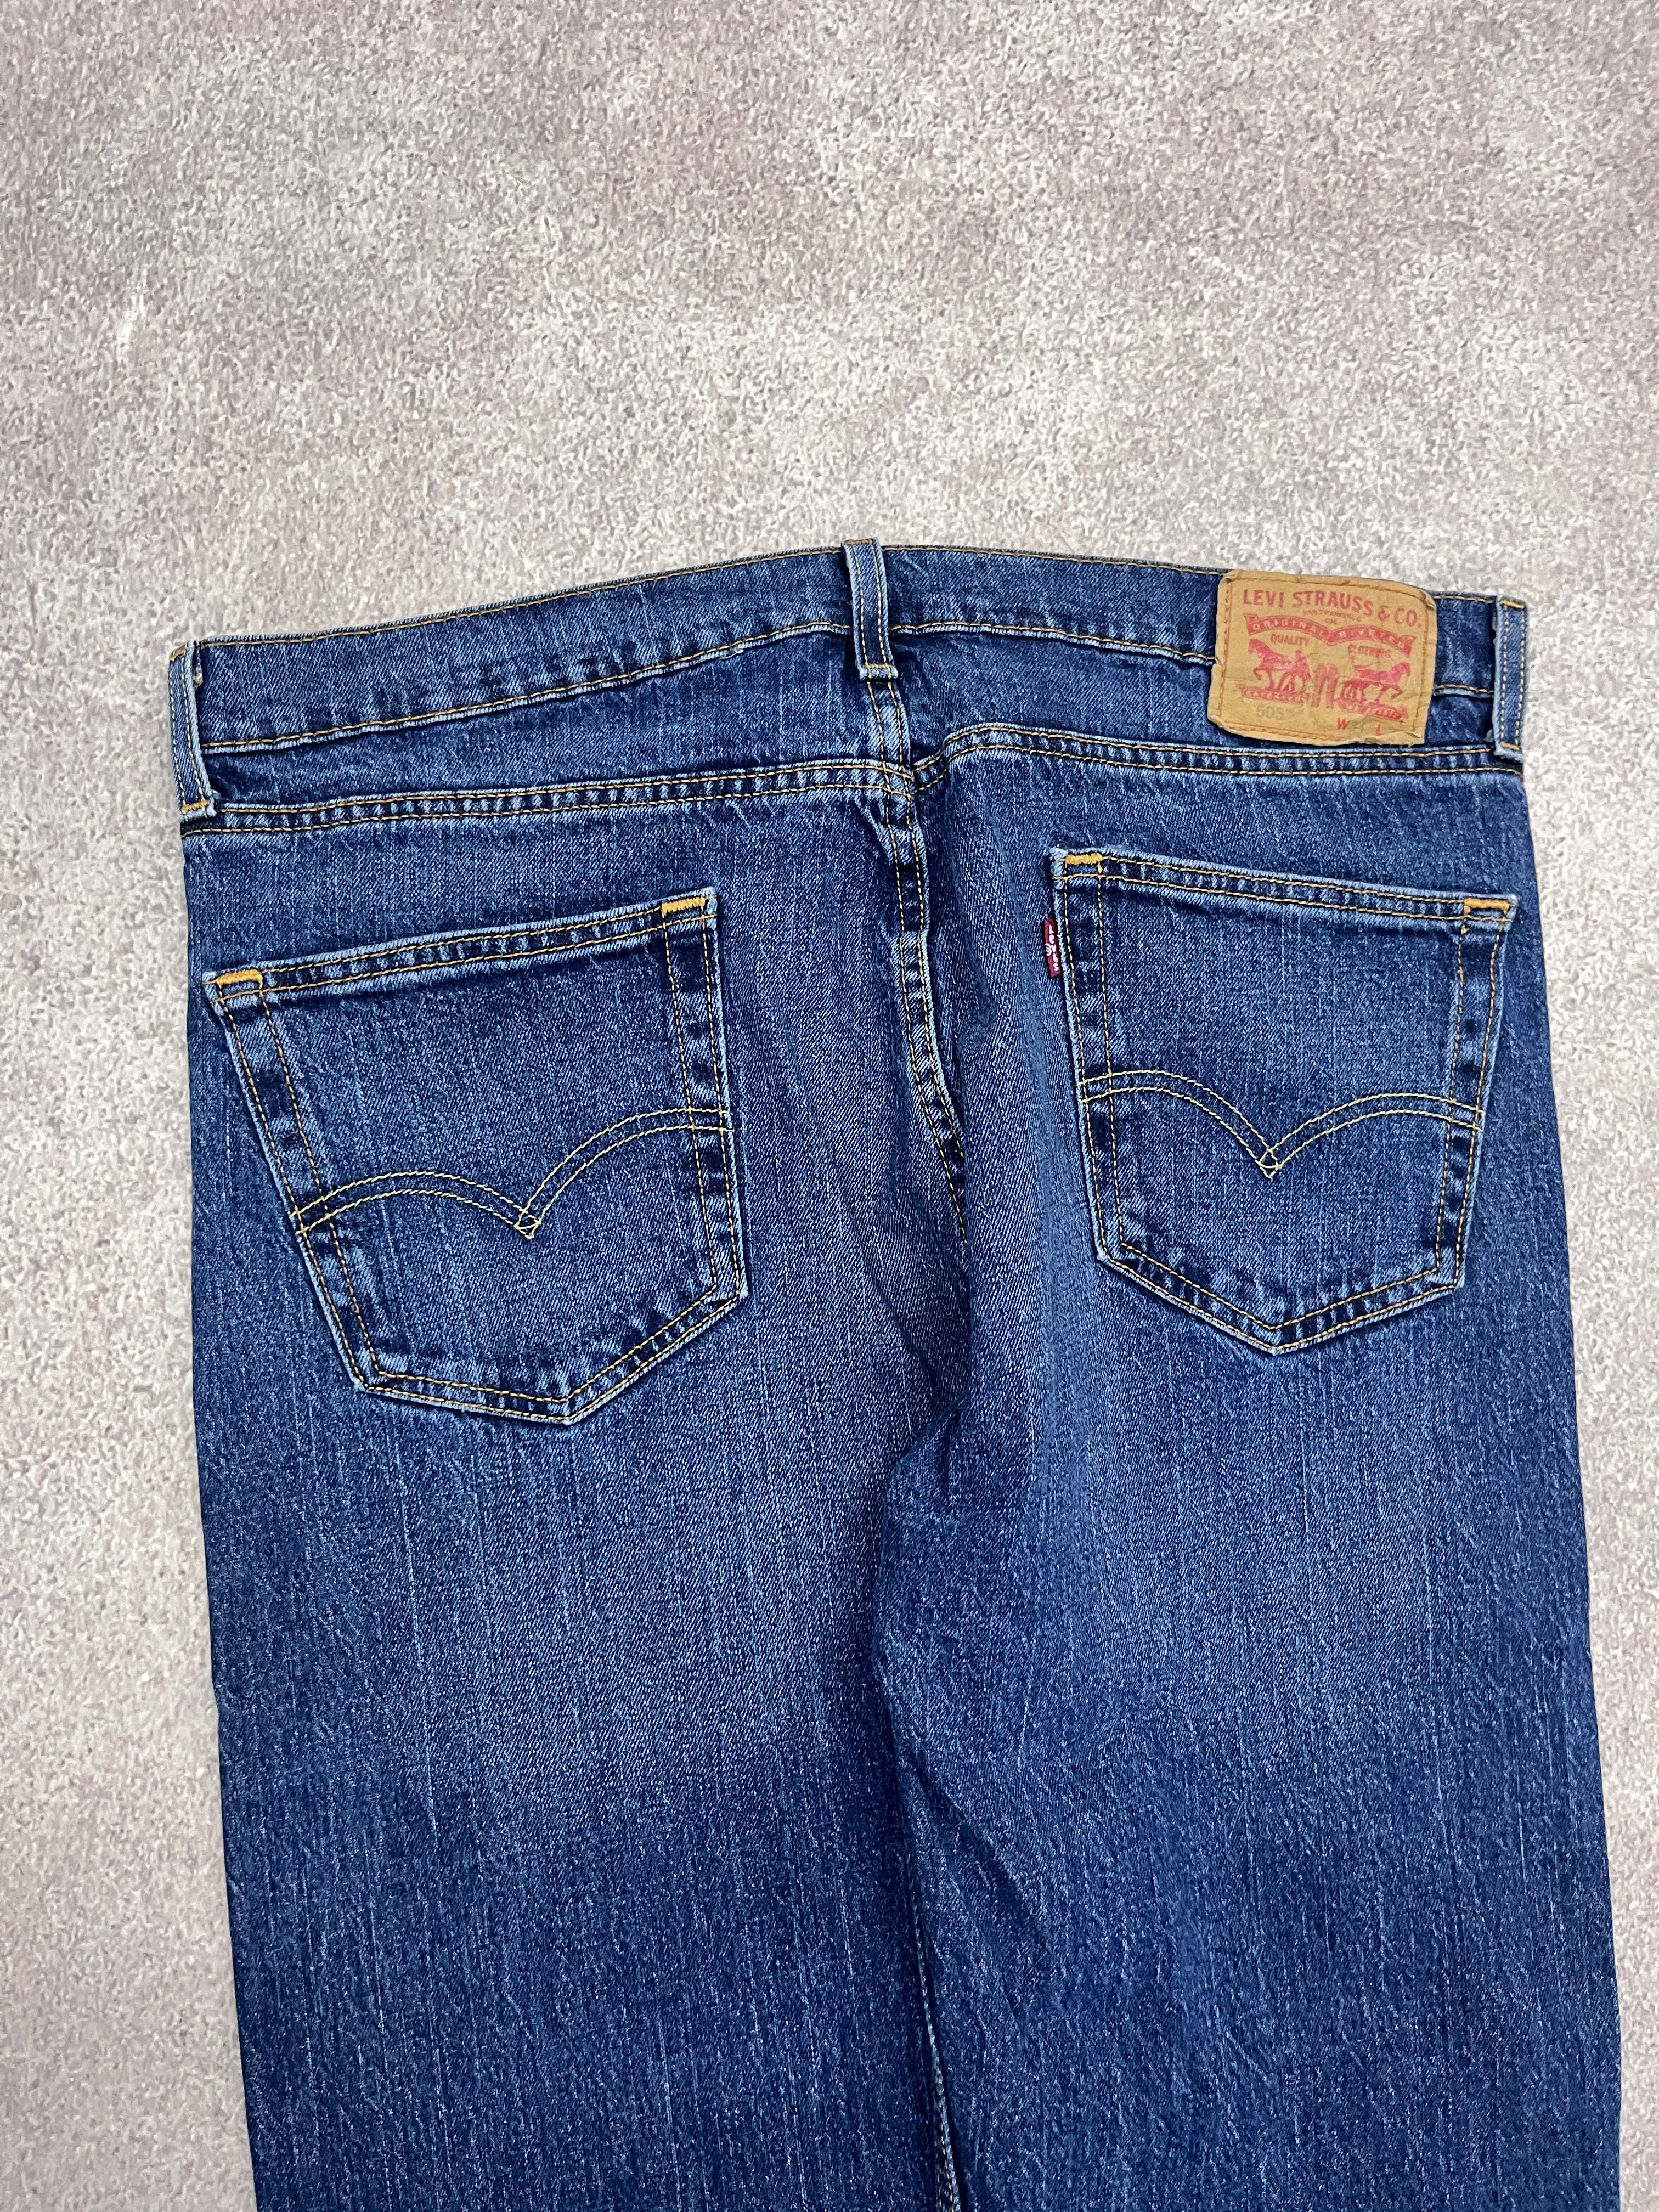 Vintage Levi 505 Denim Jeans Blue // W00 L00 - RHAGHOUSE VINTAGE